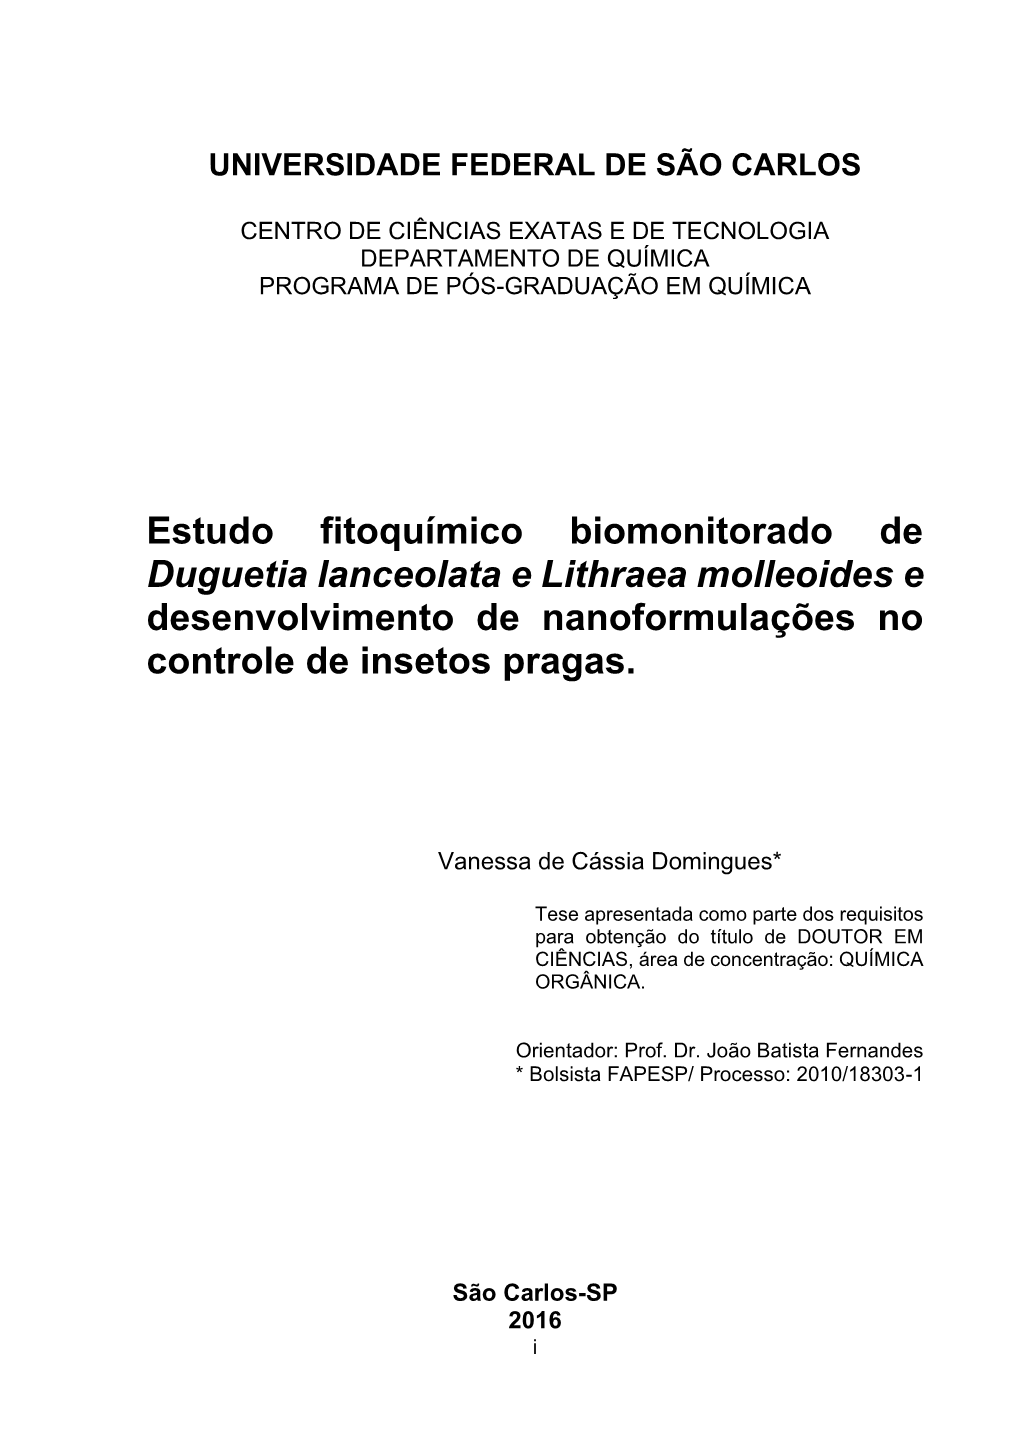 Estudo Fitoquímico Biomonitorado De Duguetia Lanceolata E Lithraea Molleoides E Desenvolvimento De Nanoformulações No Controle De Insetos Pragas